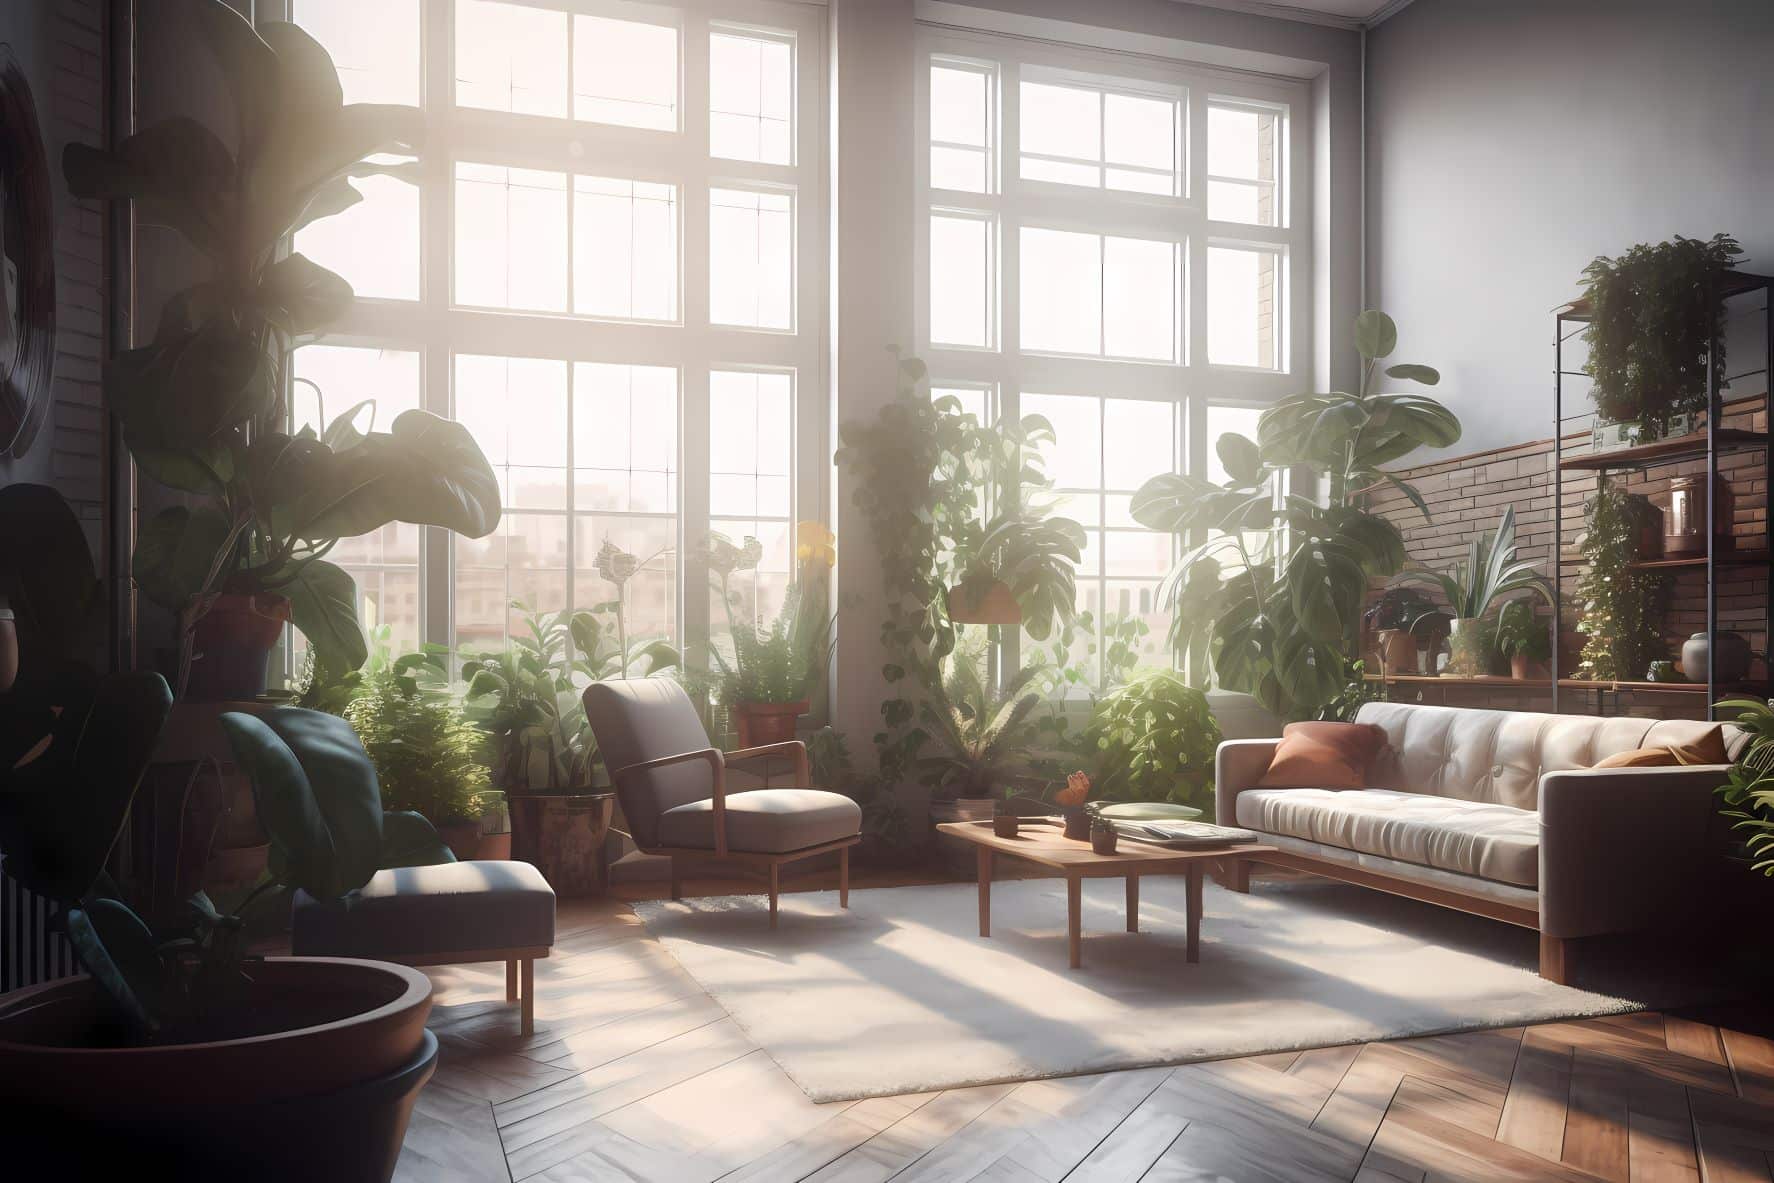 Create an indoor oasis